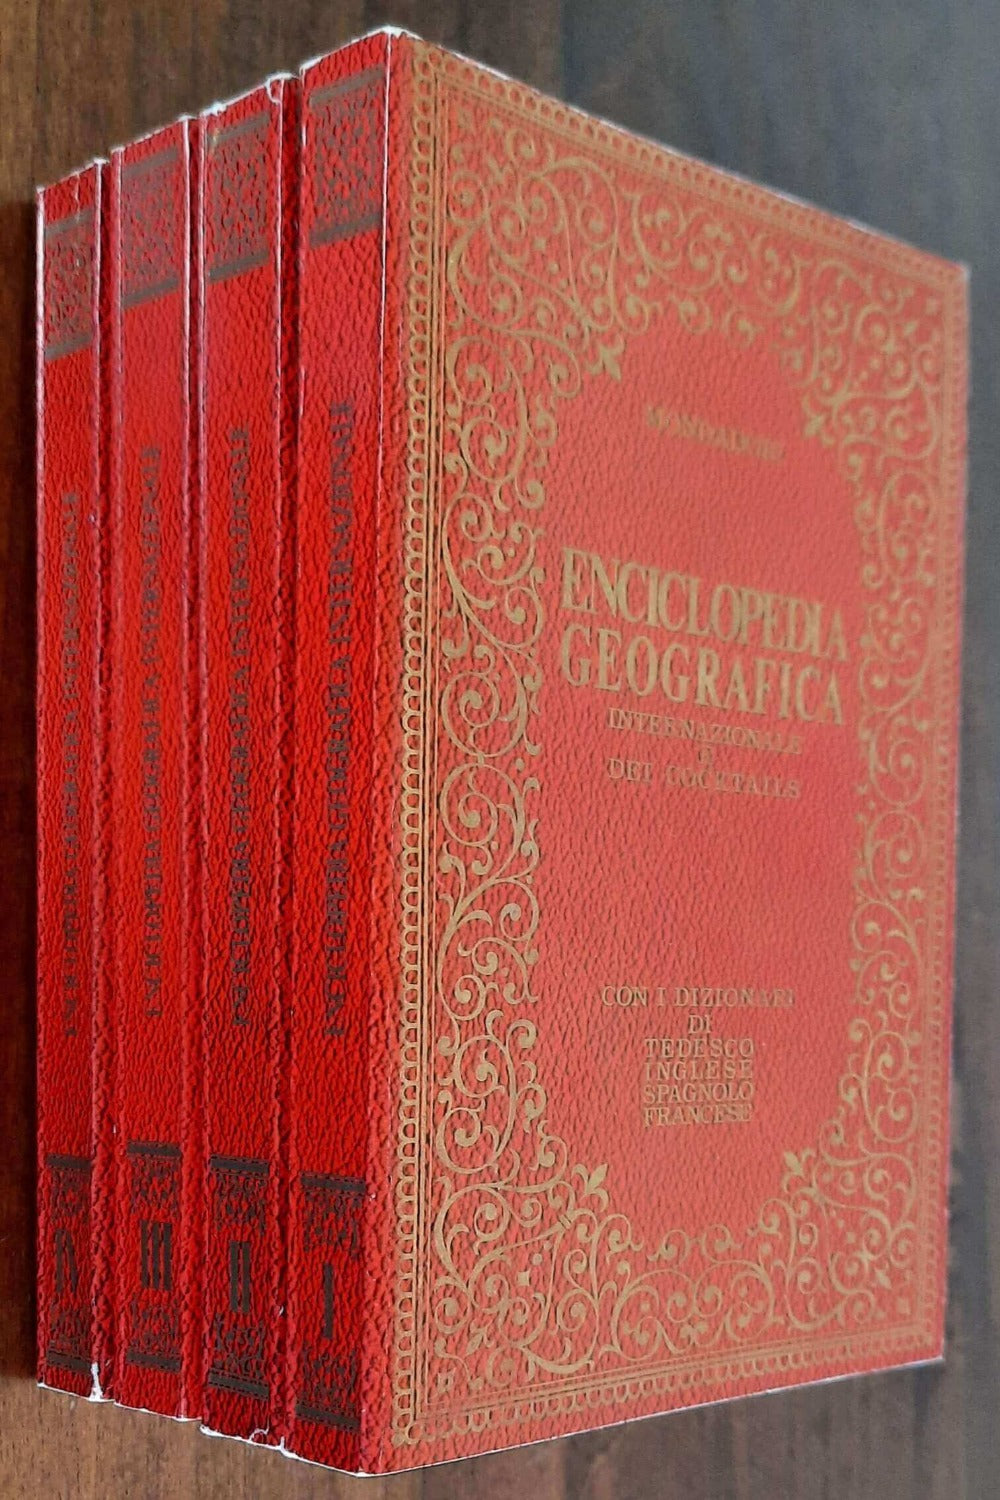 Enciclopedia geografica internazionale e dei cocktails - in 4 volumetti